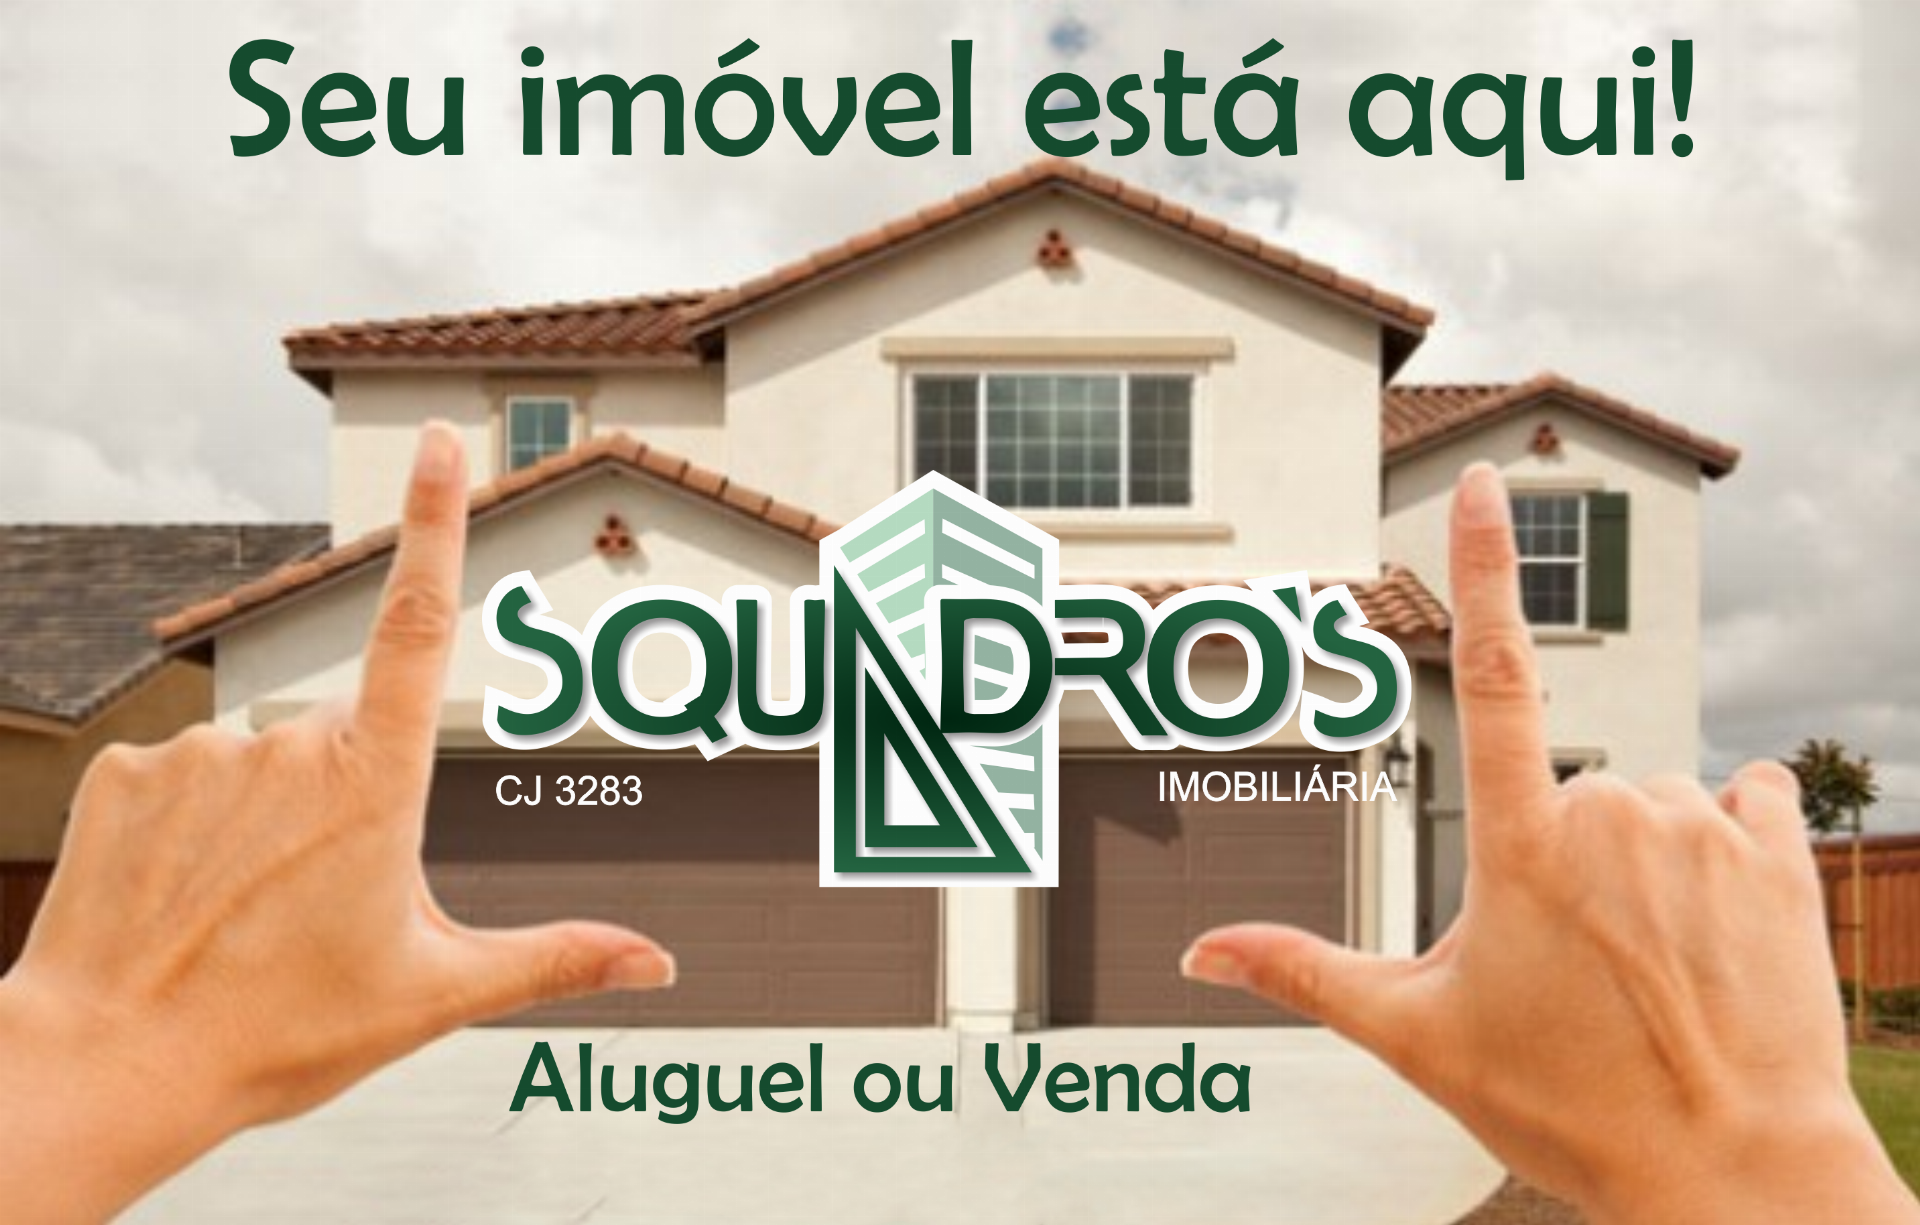 Terreno 840m² à venda Avenida Paranapuã,Tauá, Ilha do Governador ,Rio de Janeiro - R$ 1.800.000 - 6245 - 1